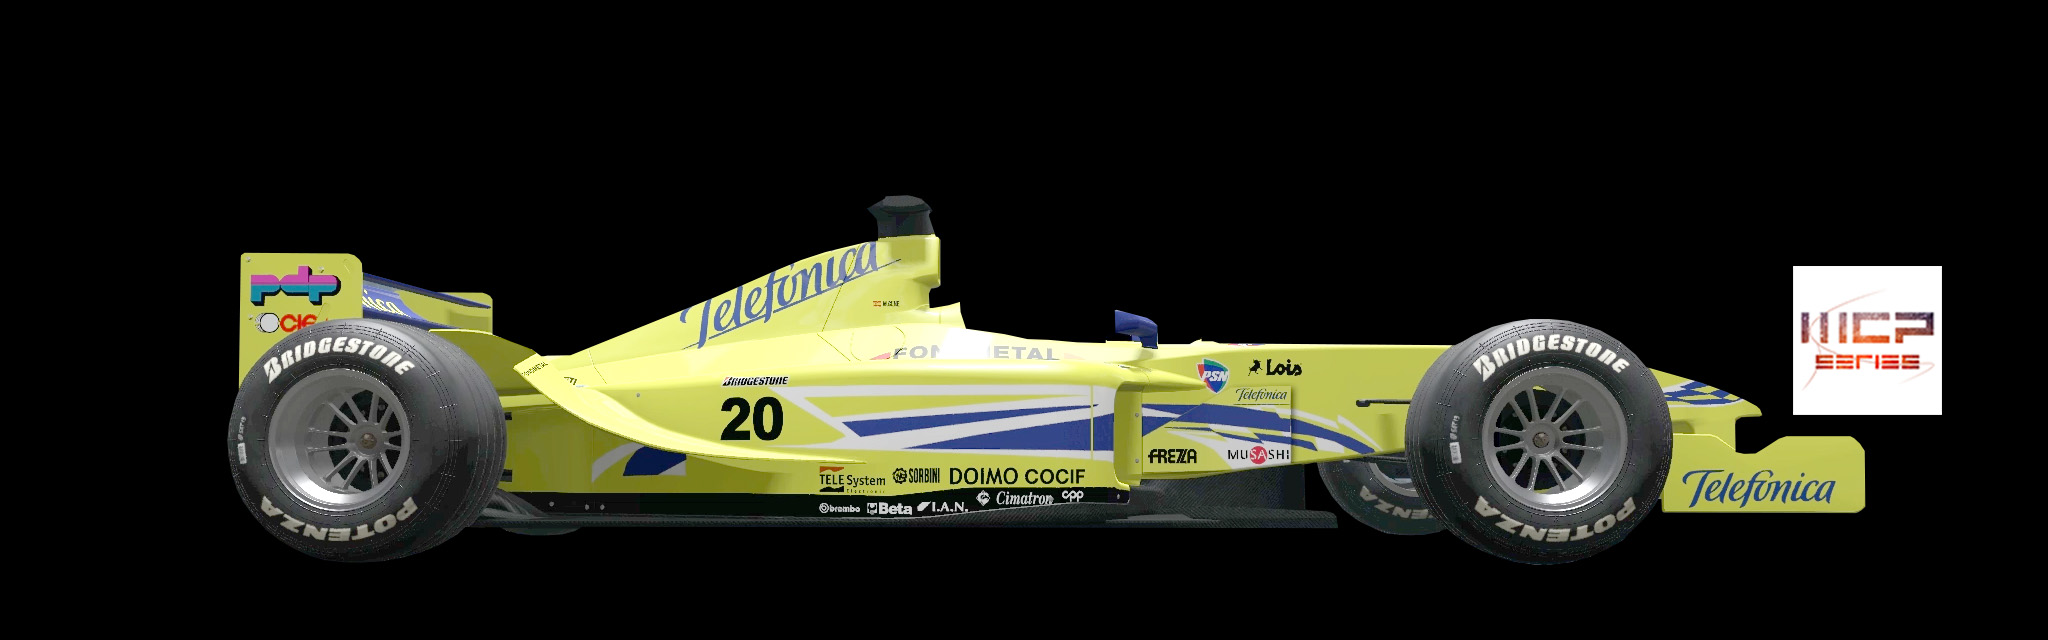 F1-Minardi 2k.jpg